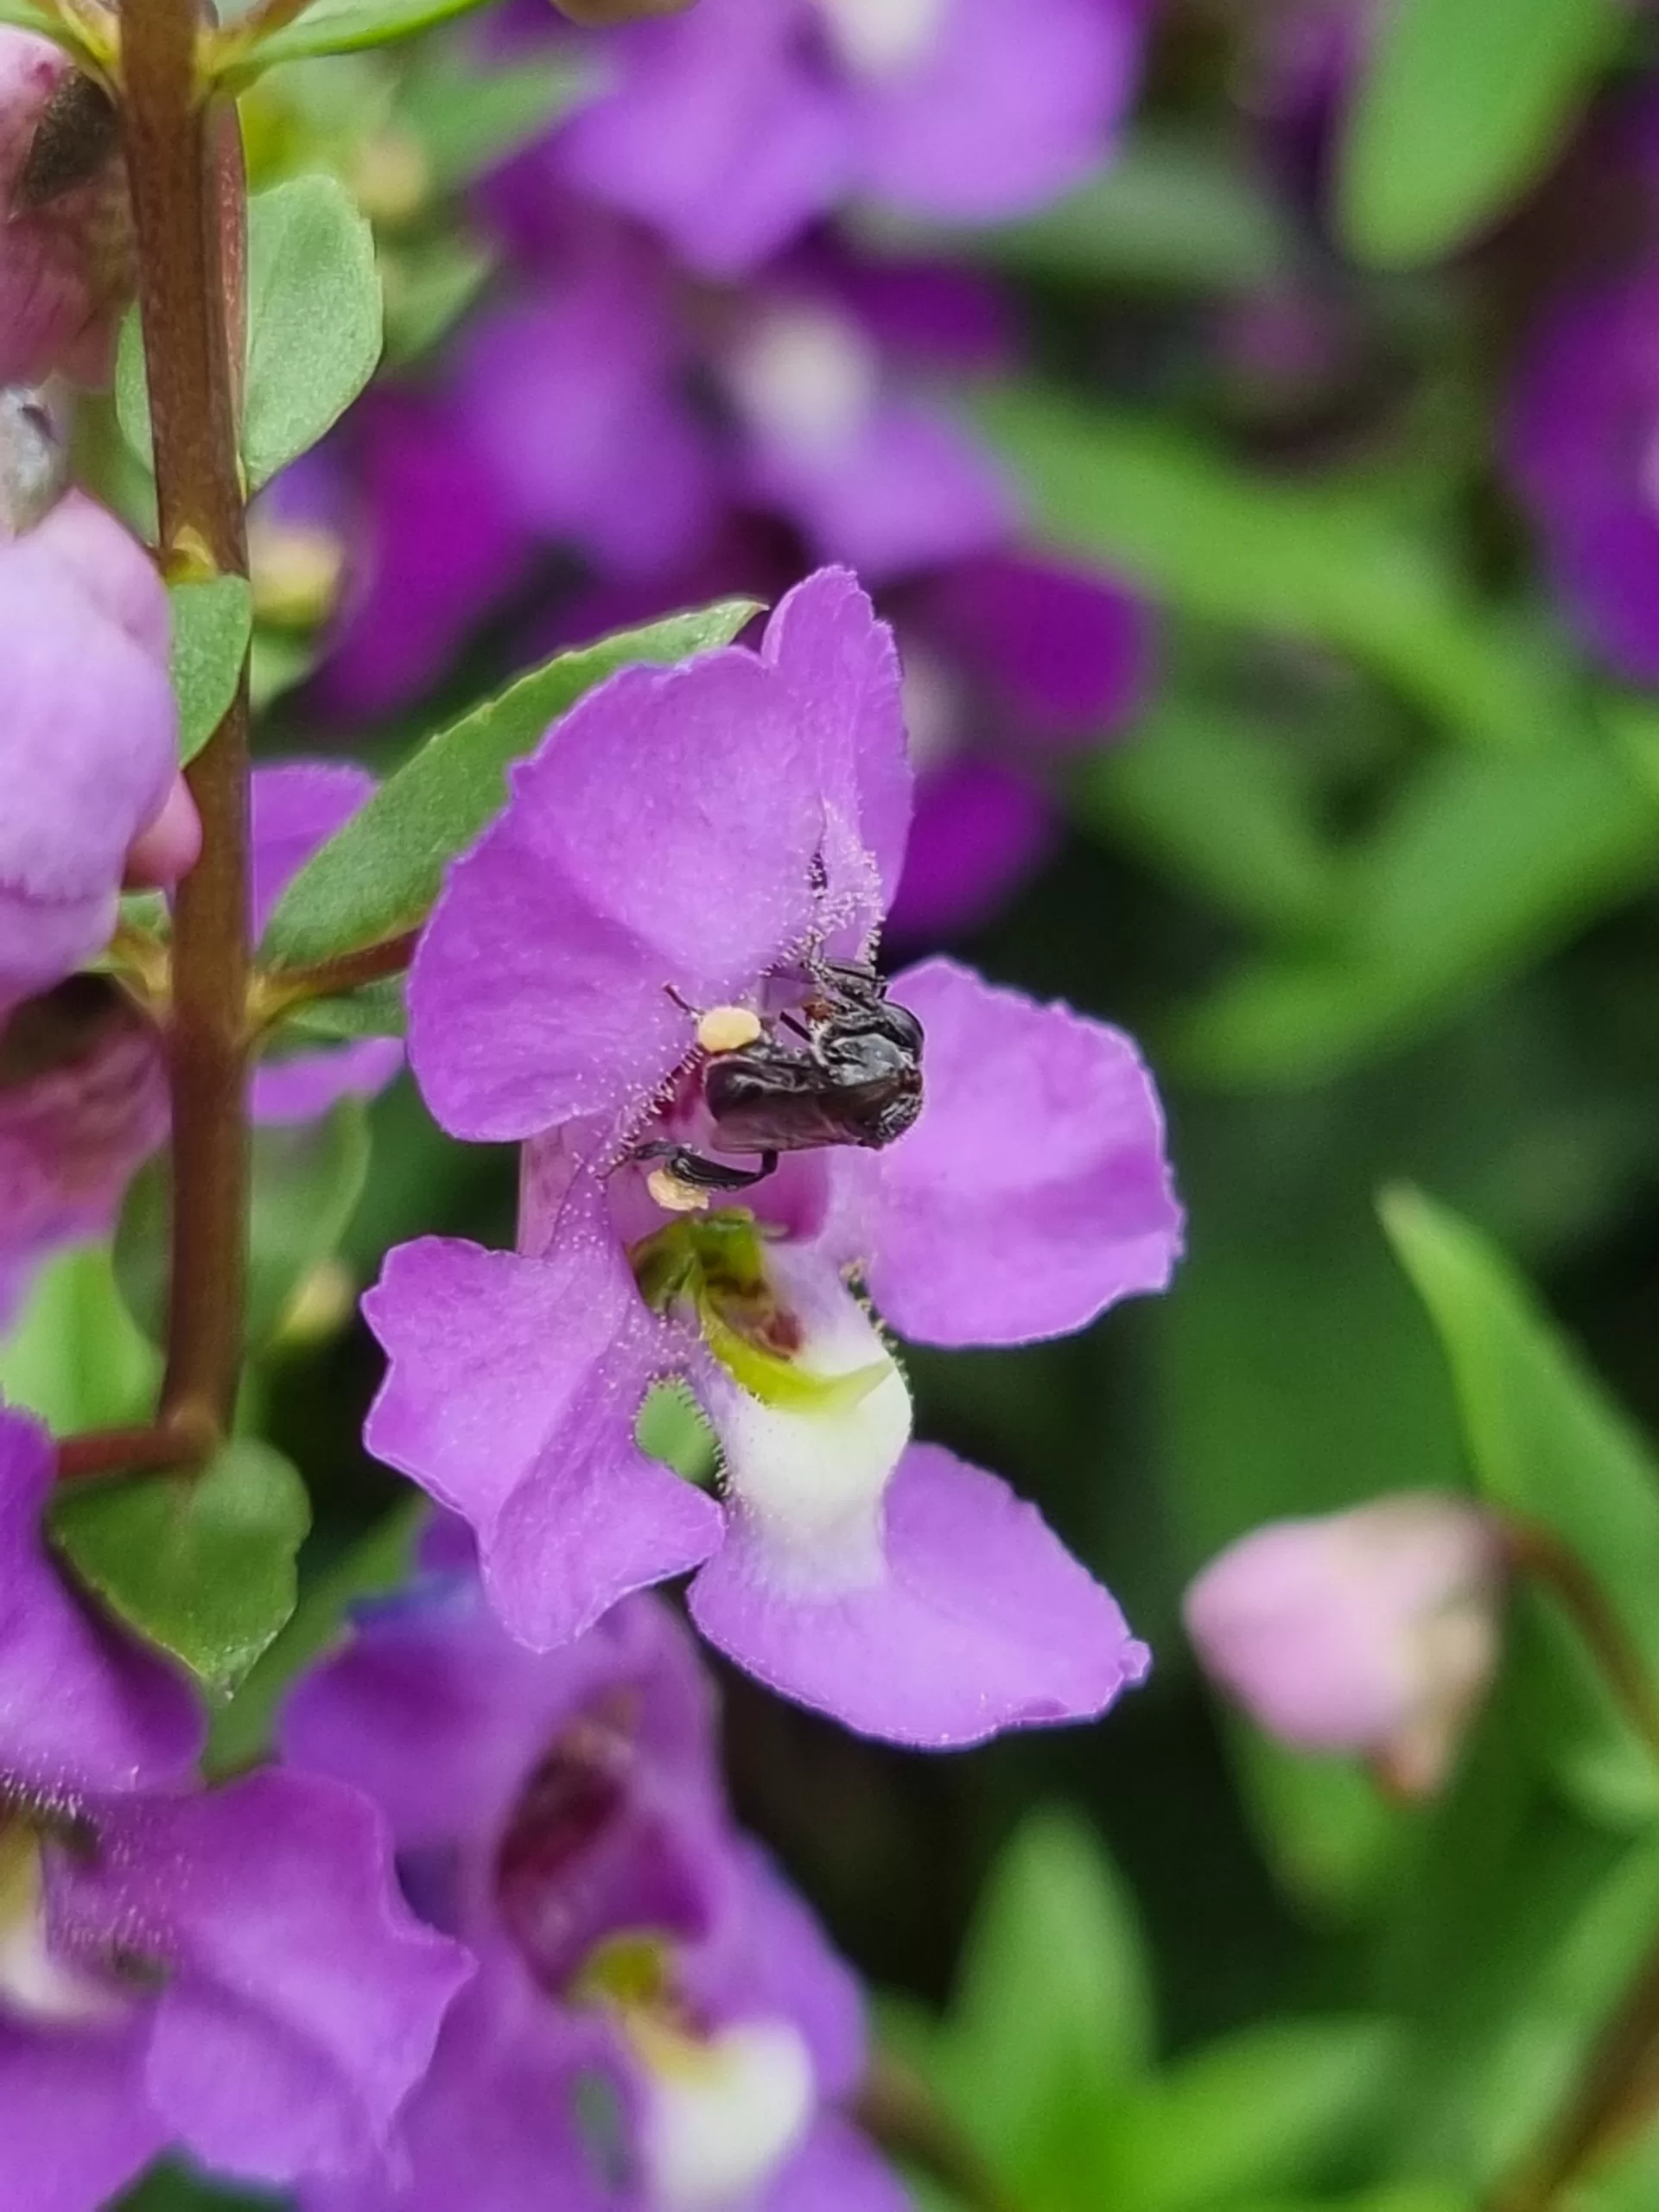 stingless bee on purple flowers